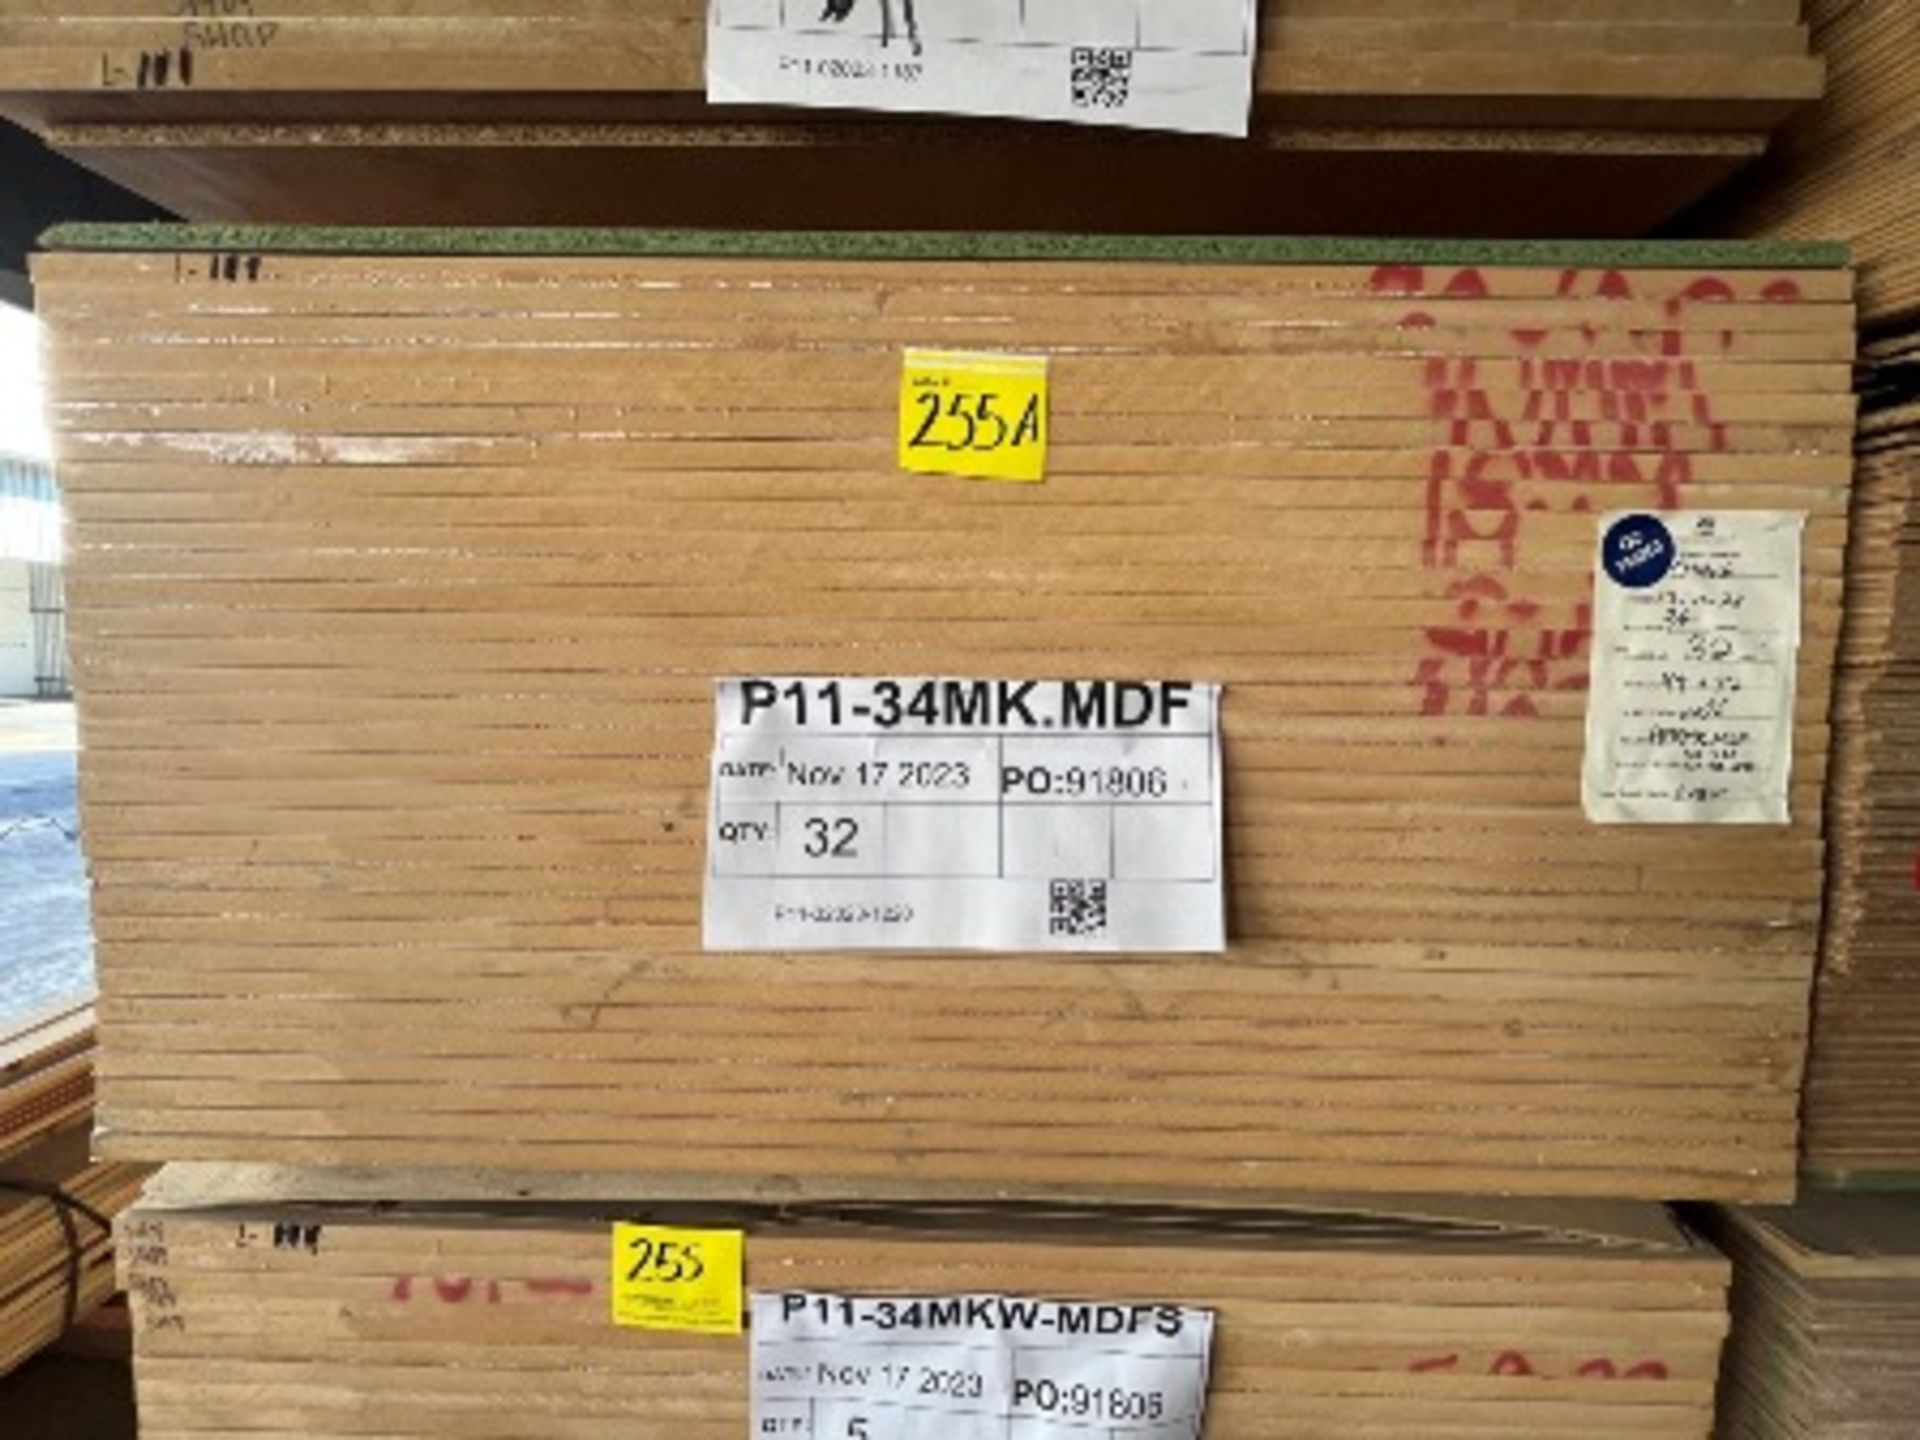 (NUEVO) Lote de 32 piezas de madera en material 3/4 MK.MDF de medida 4 x 8 ft.